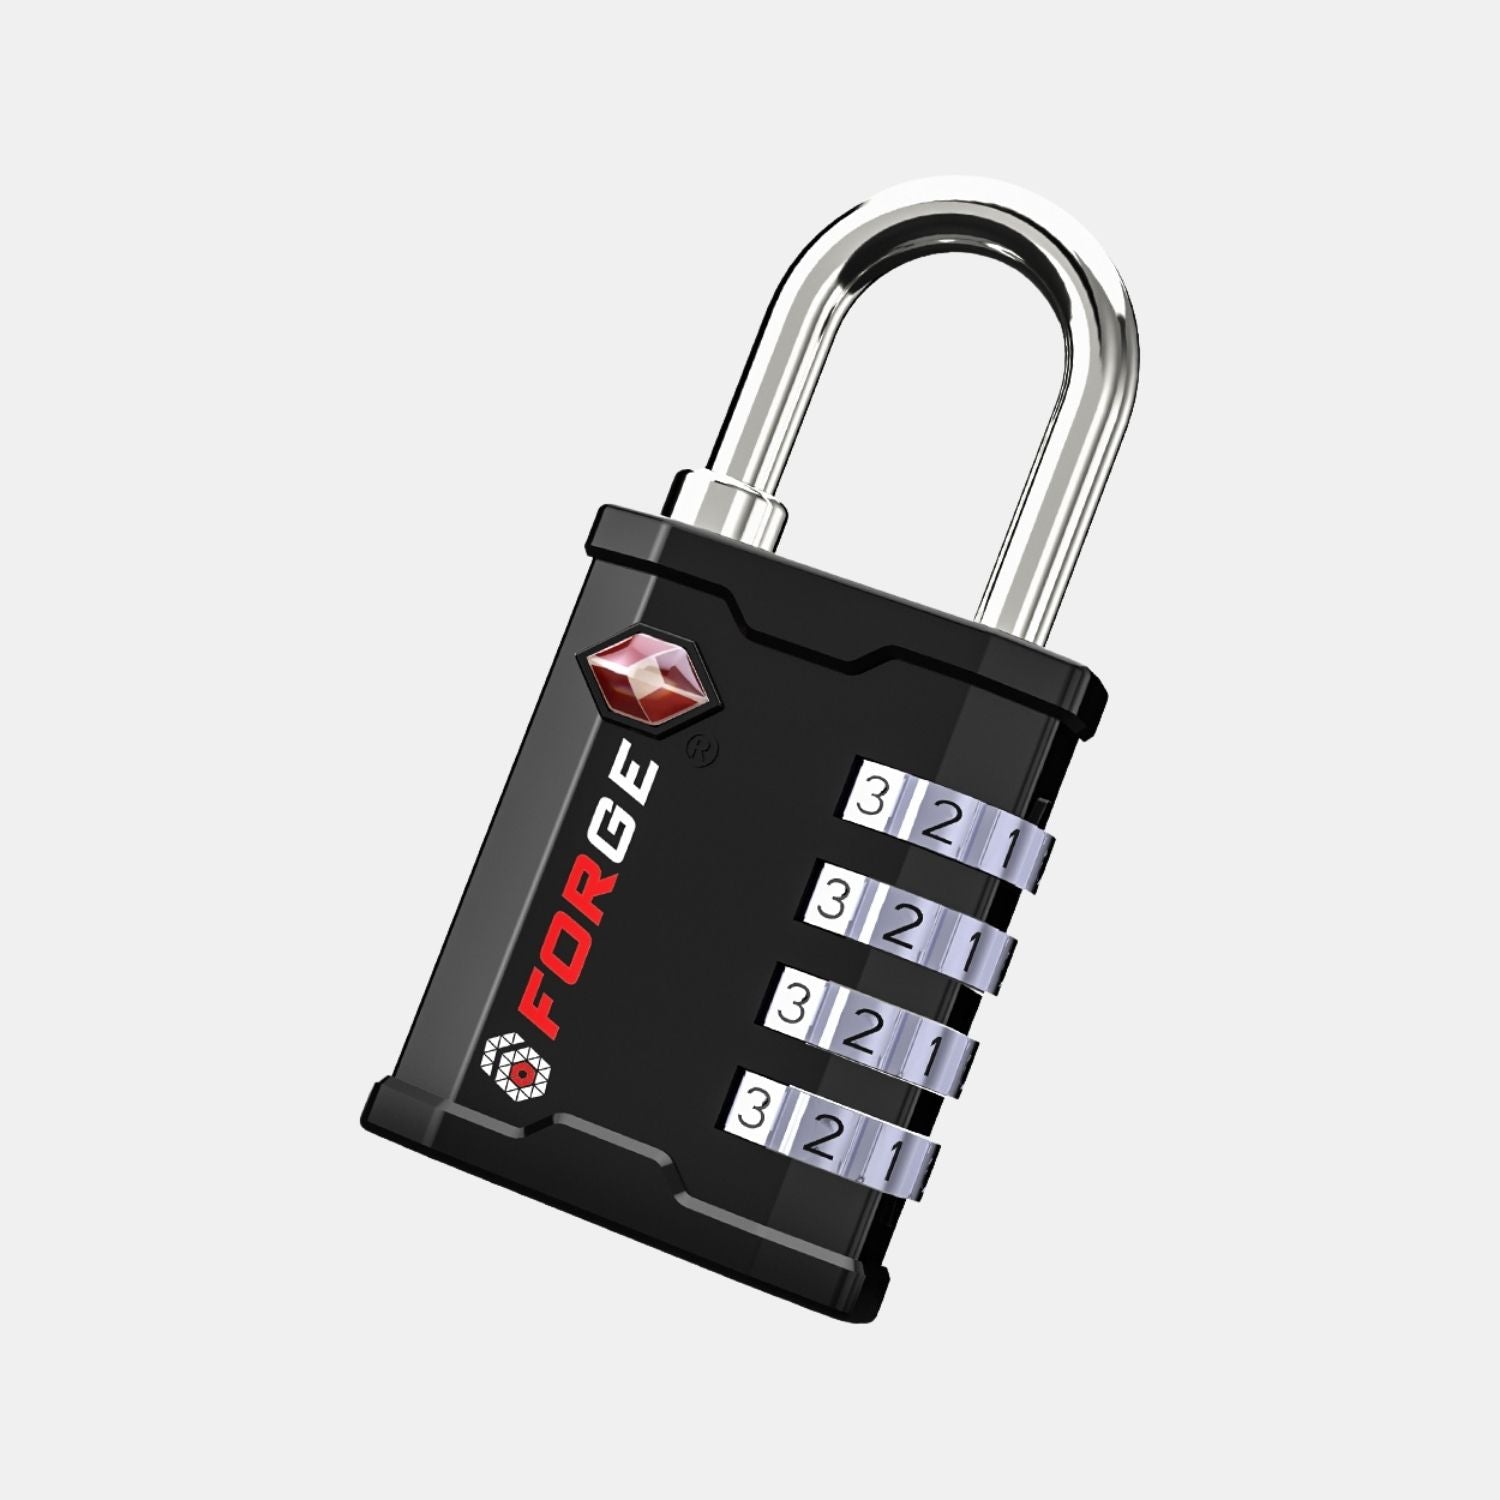 Candado de combinación de 4 dígitos aprobado por la TSA de alta resistencia para caja y estuche de herramientas con sistema de llave TSA006.